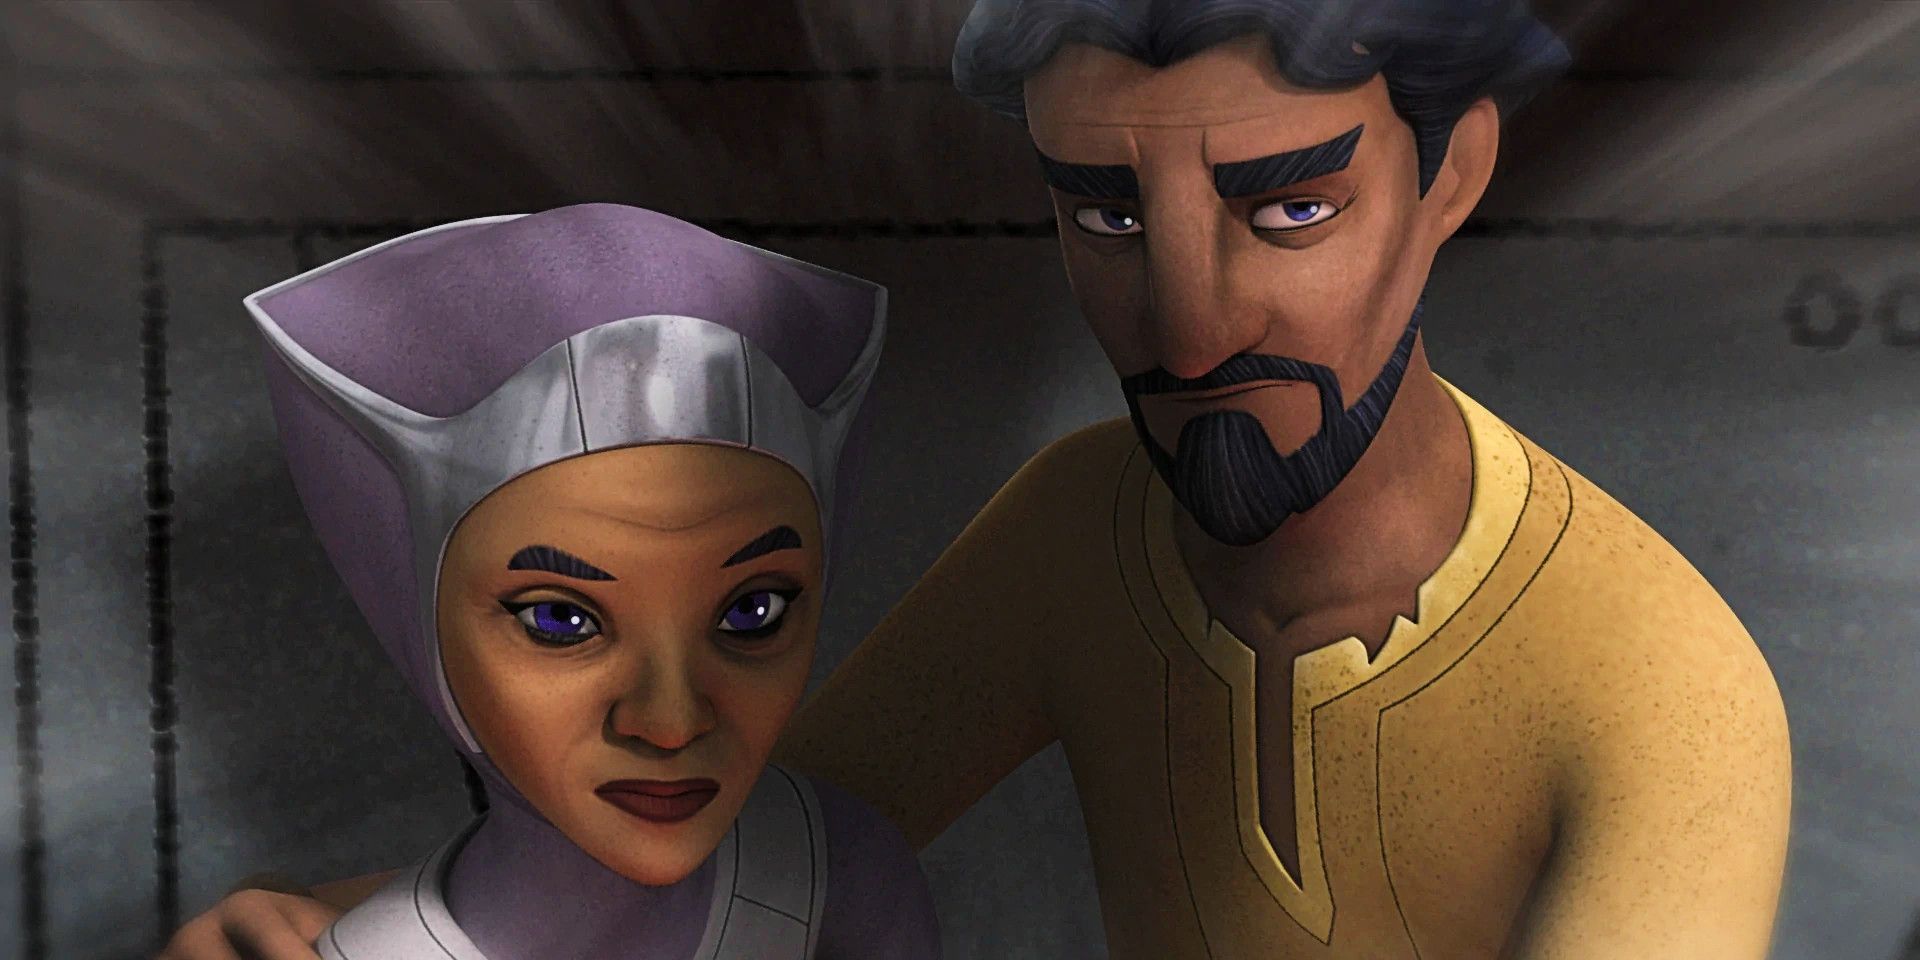 Star Wars Rebels Los padres de Ezra Bridger, Mira y Ephraim